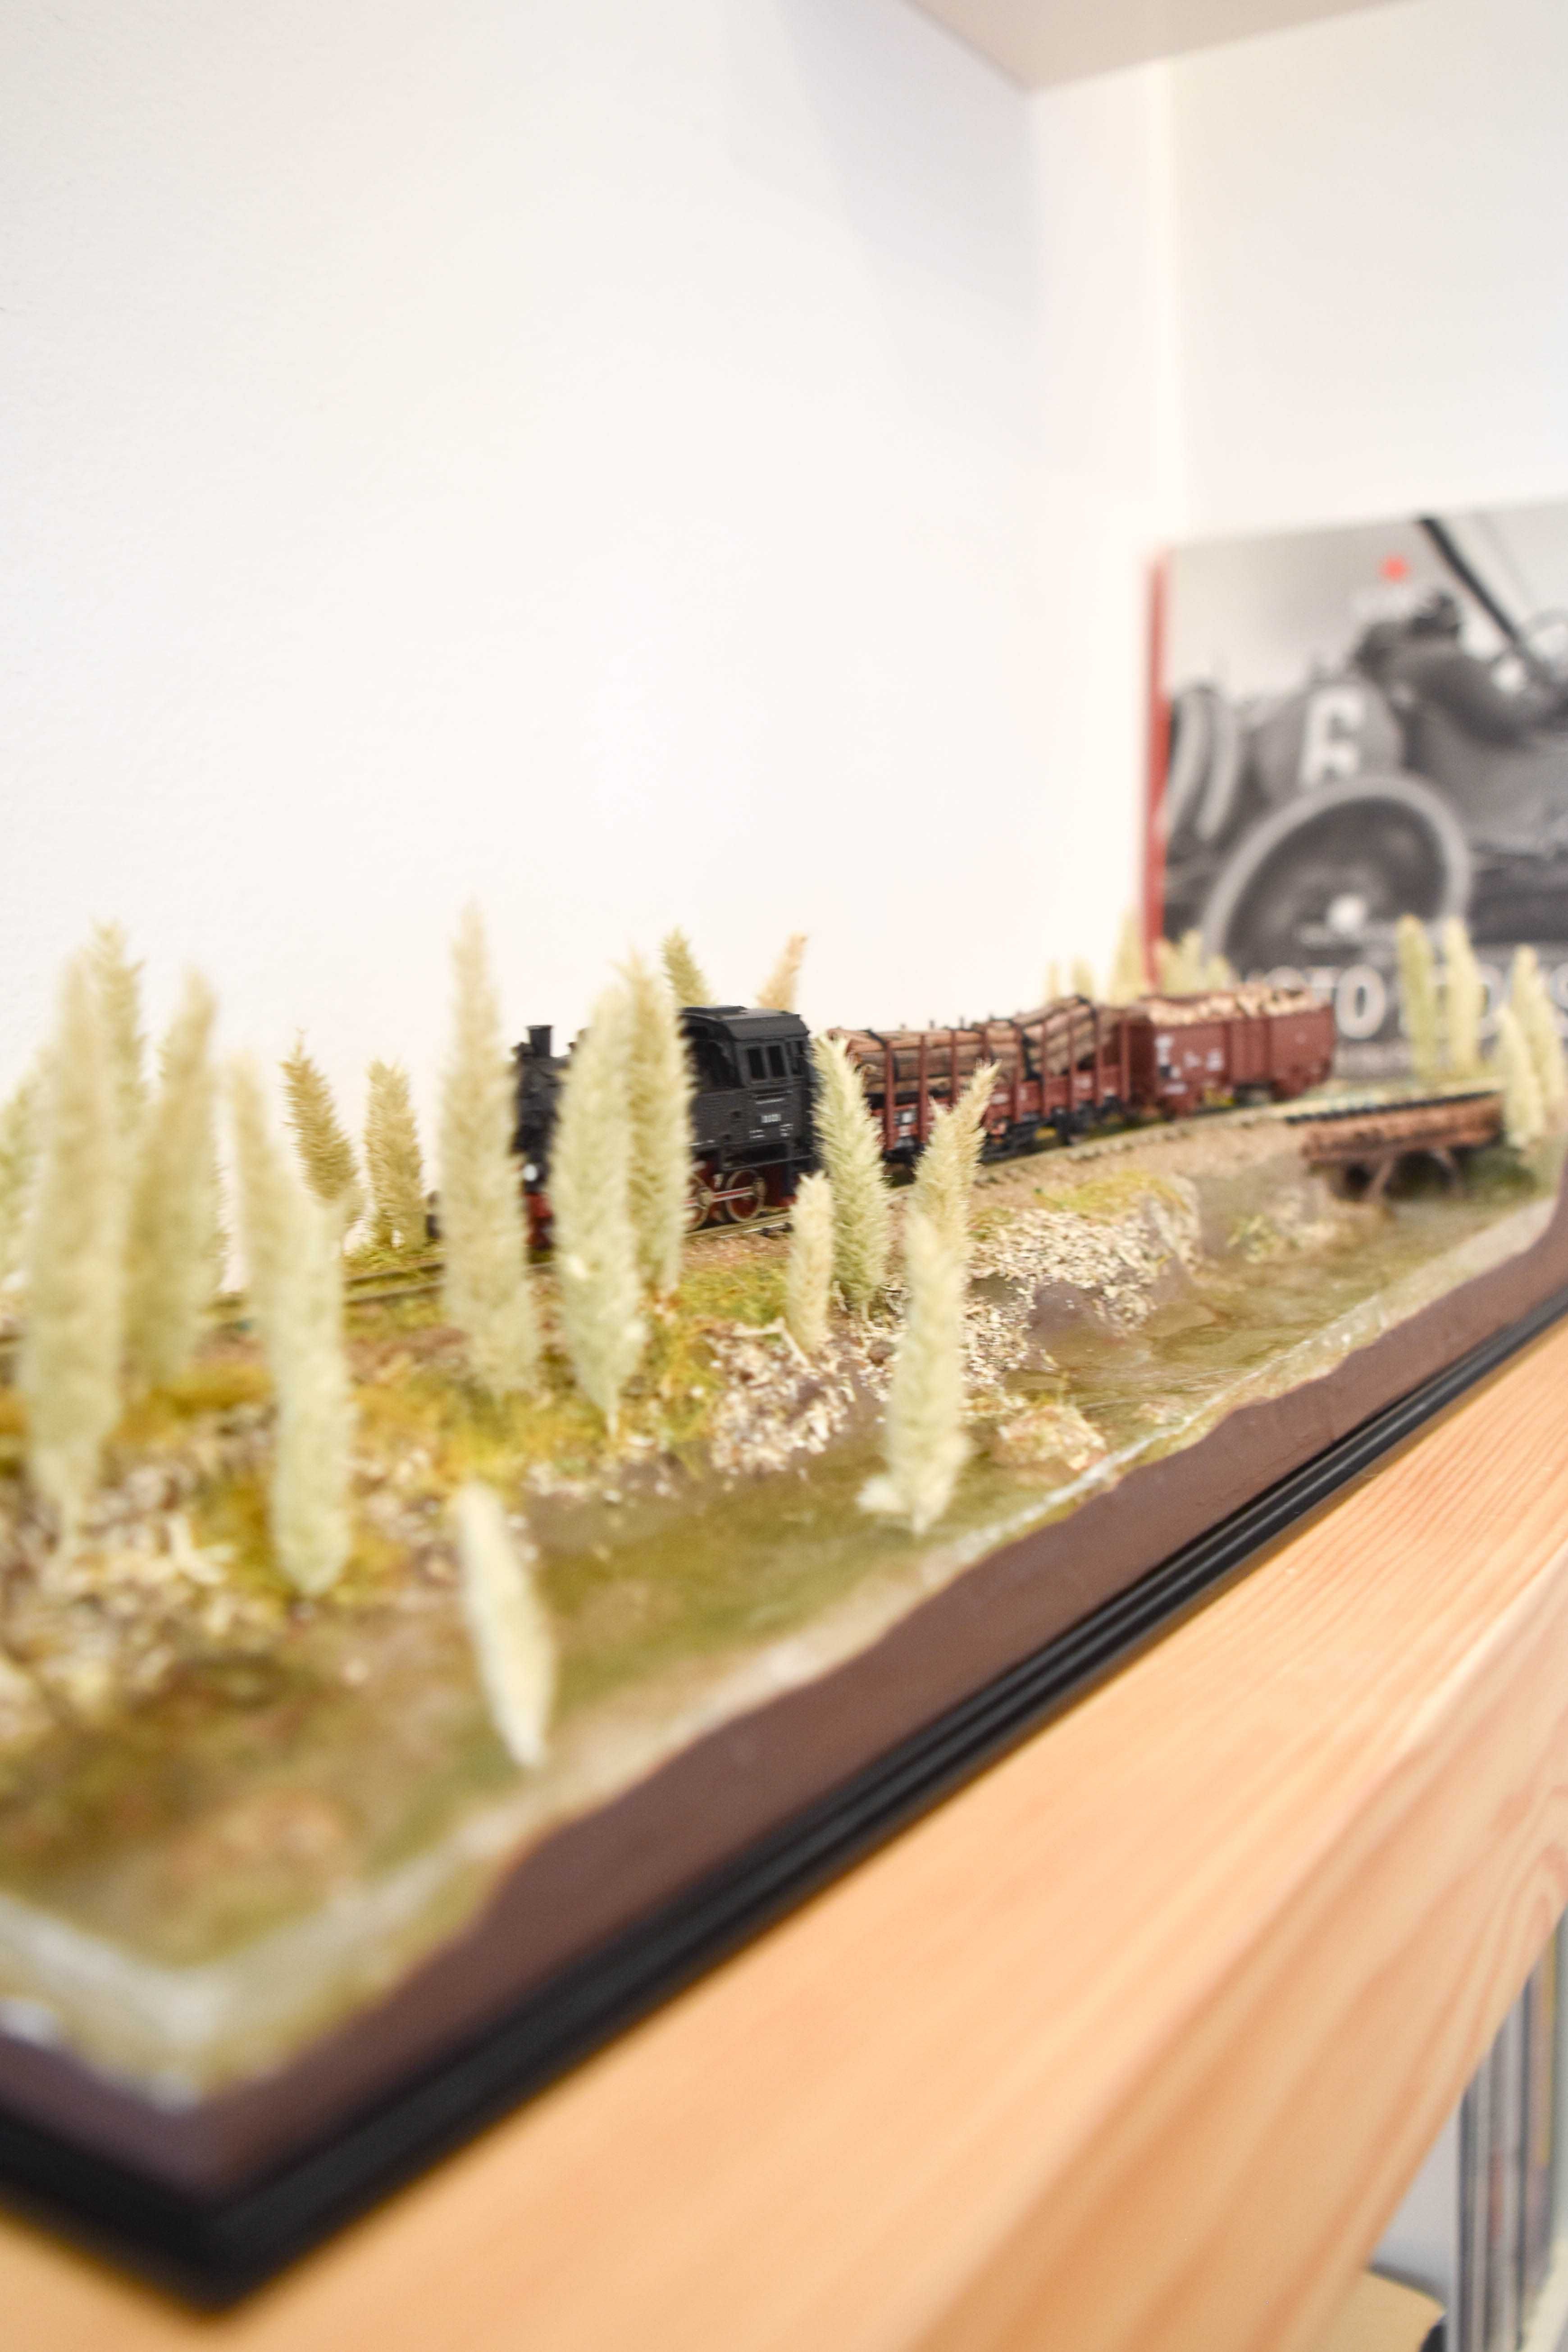 Diorama expositor de comboios escala N - novo